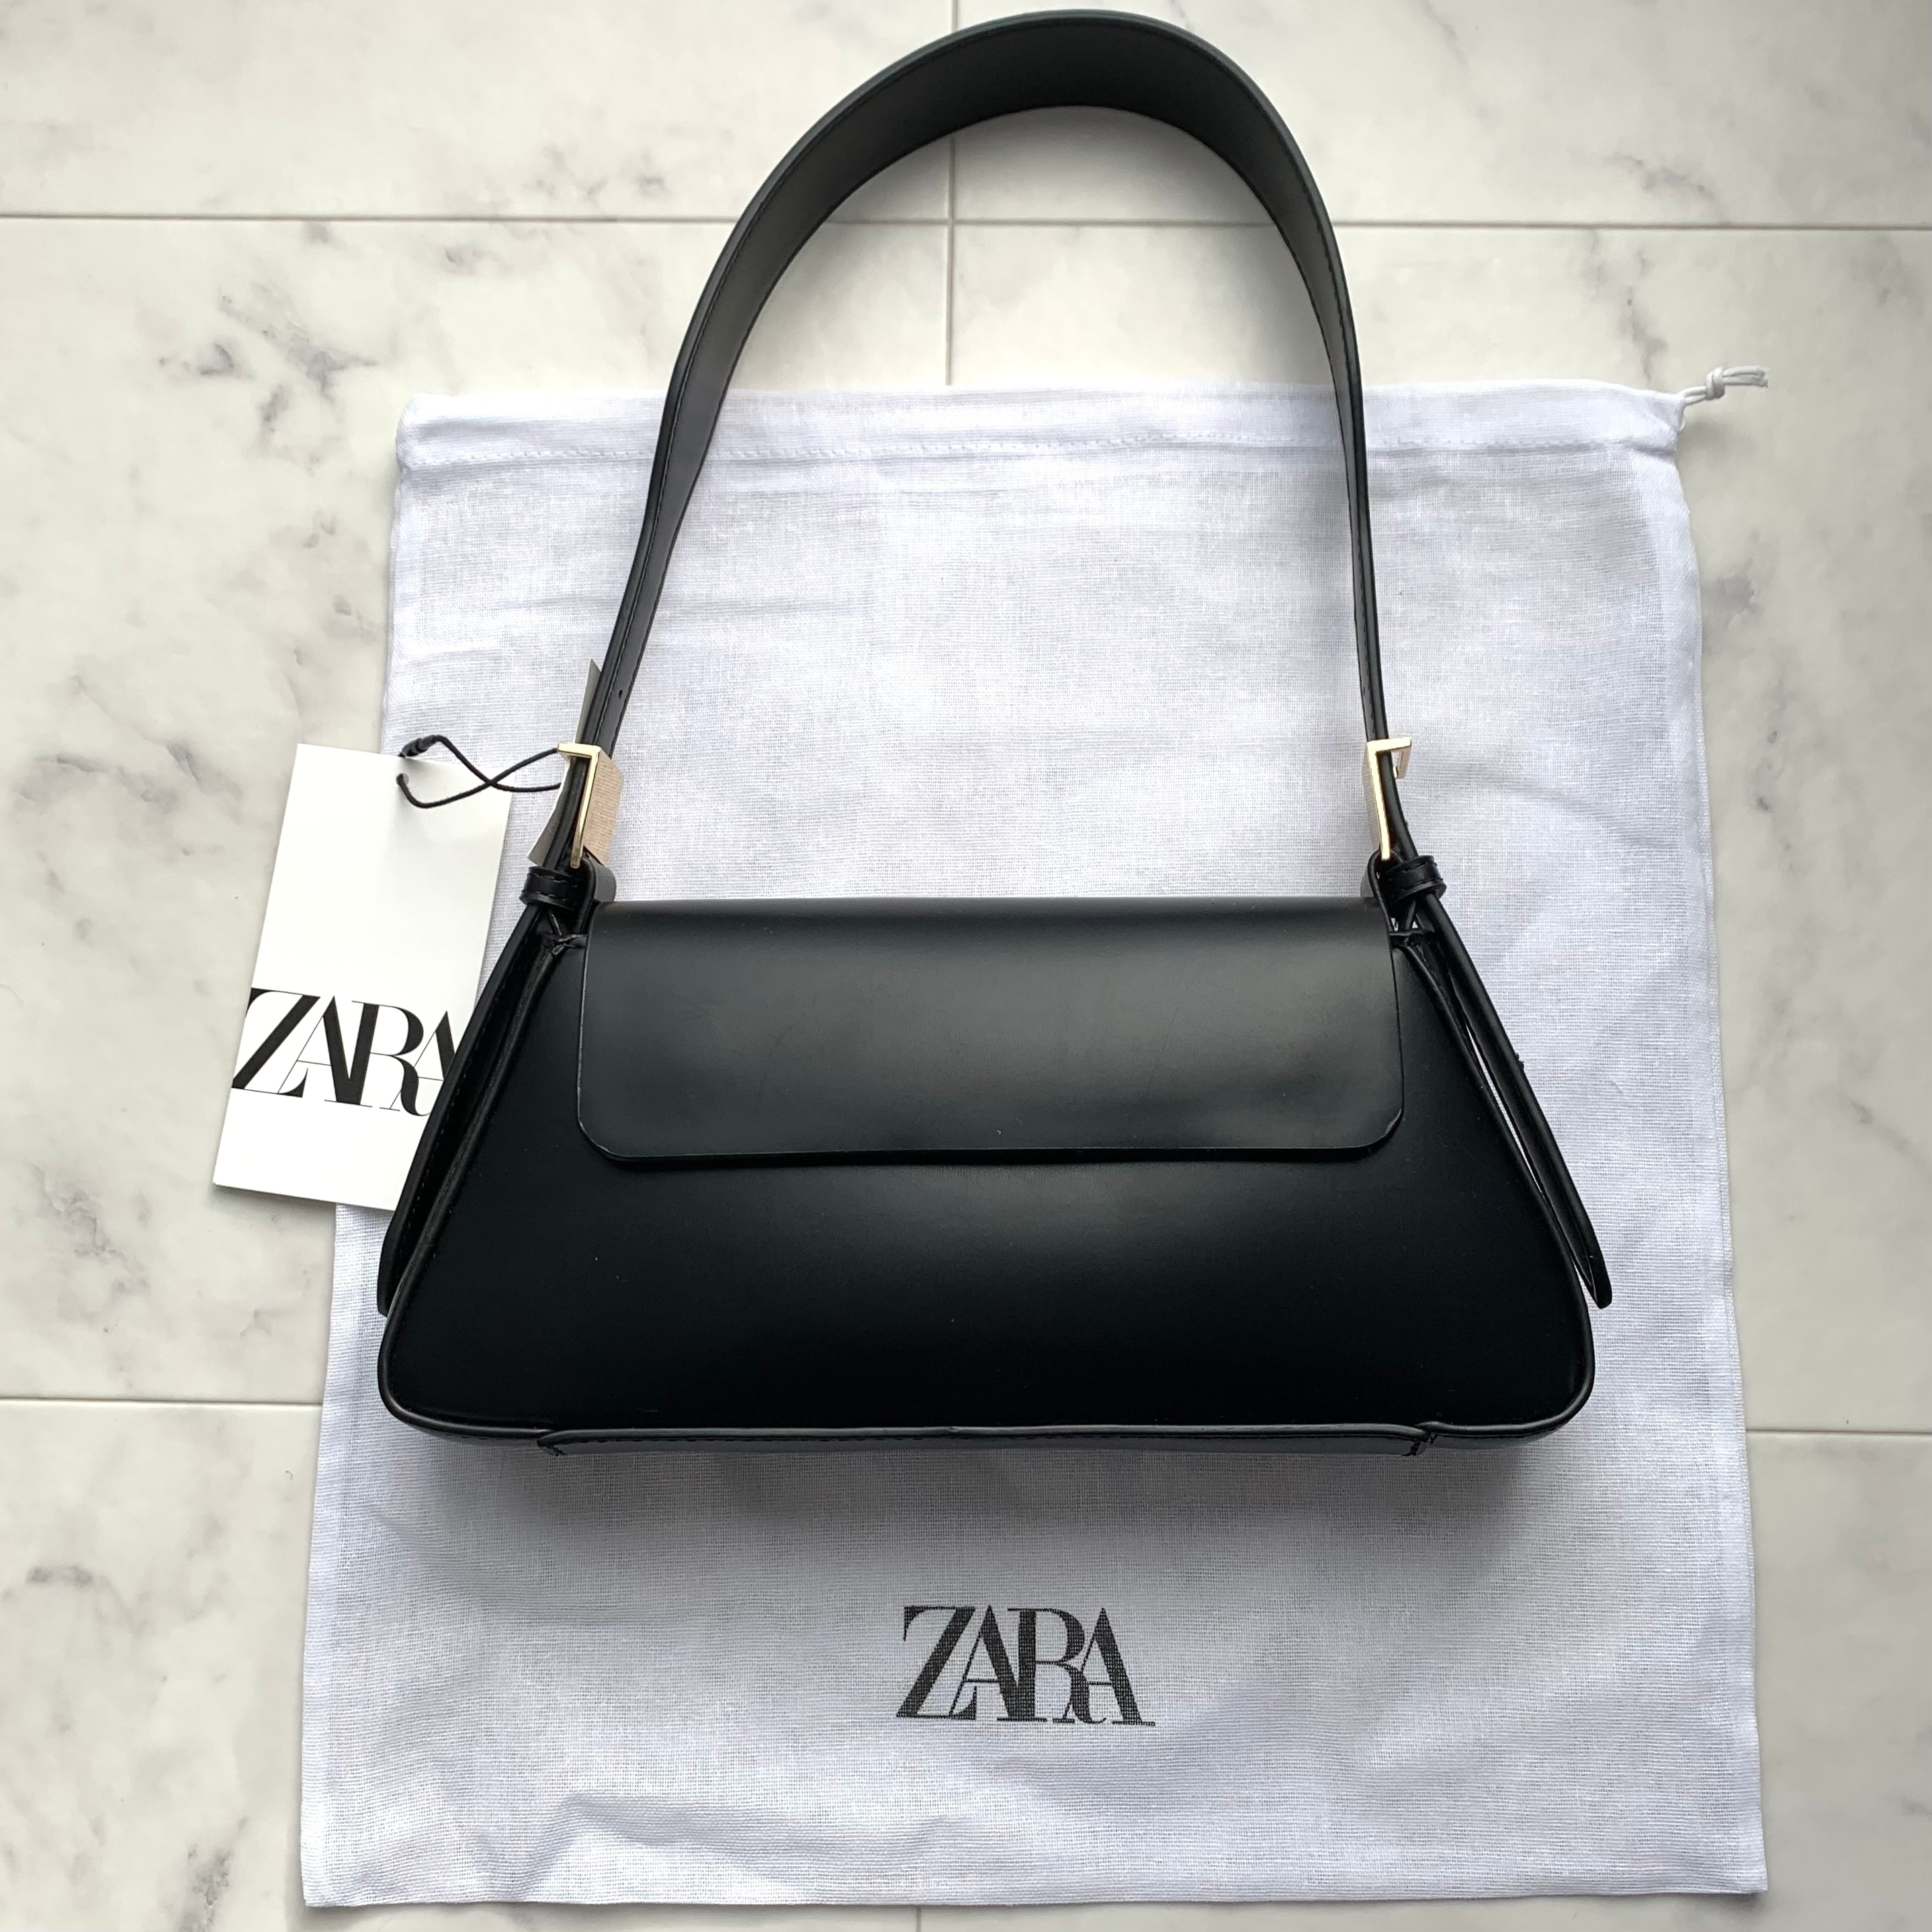 ZARAのオススメのバッグ「フラップ ミニマル ショルダーバック」